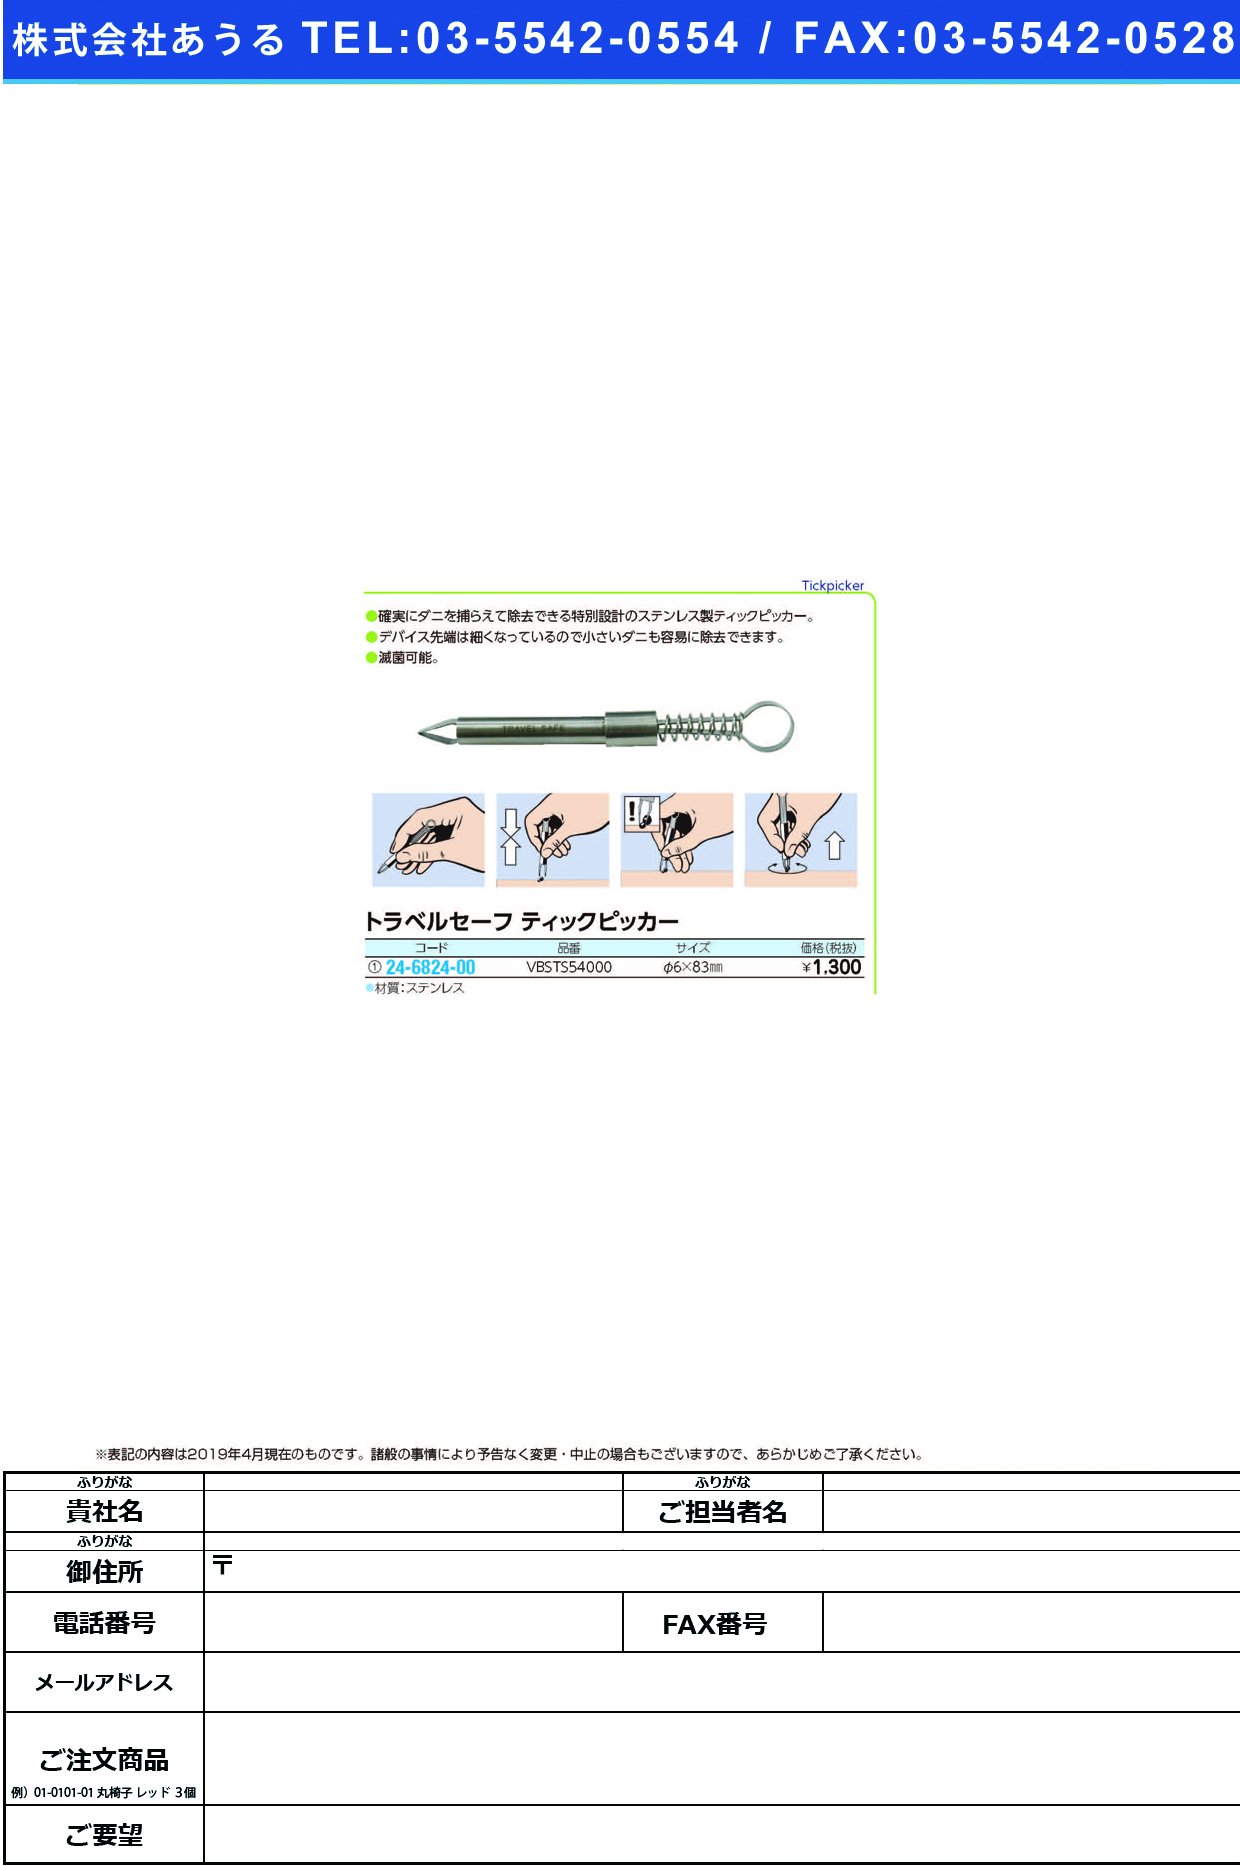 (24-6824-00)ティックピッカー VBSTS54000(ｹｲ6X83MM) ﾃｨｯｸﾋﾟｯｶｰ【1個単位】【2019年カタログ商品】